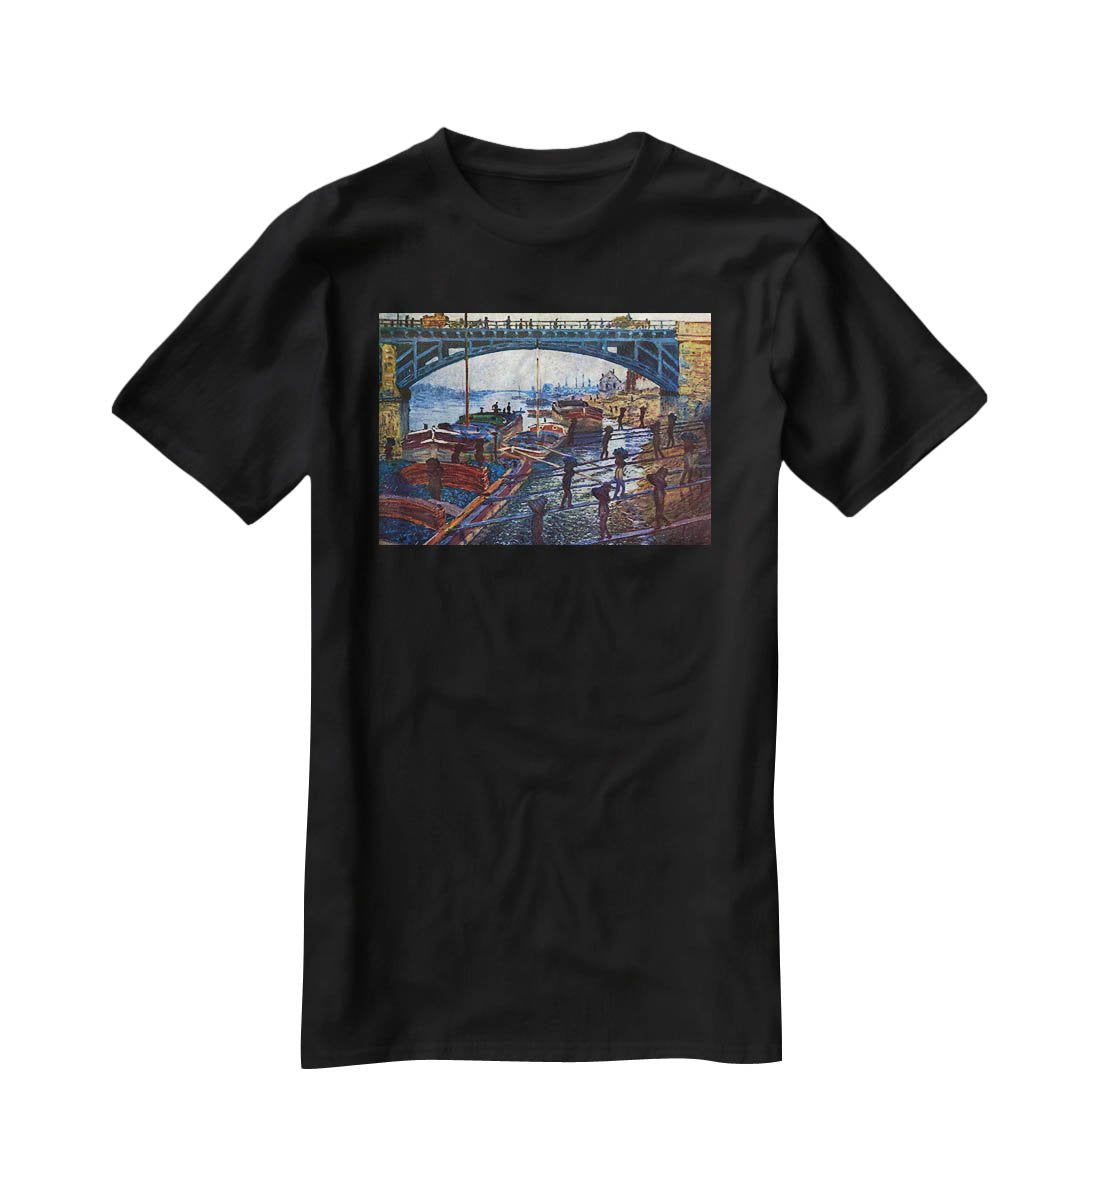 The coal carrier by Monet T-Shirt - Canvas Art Rocks - 1